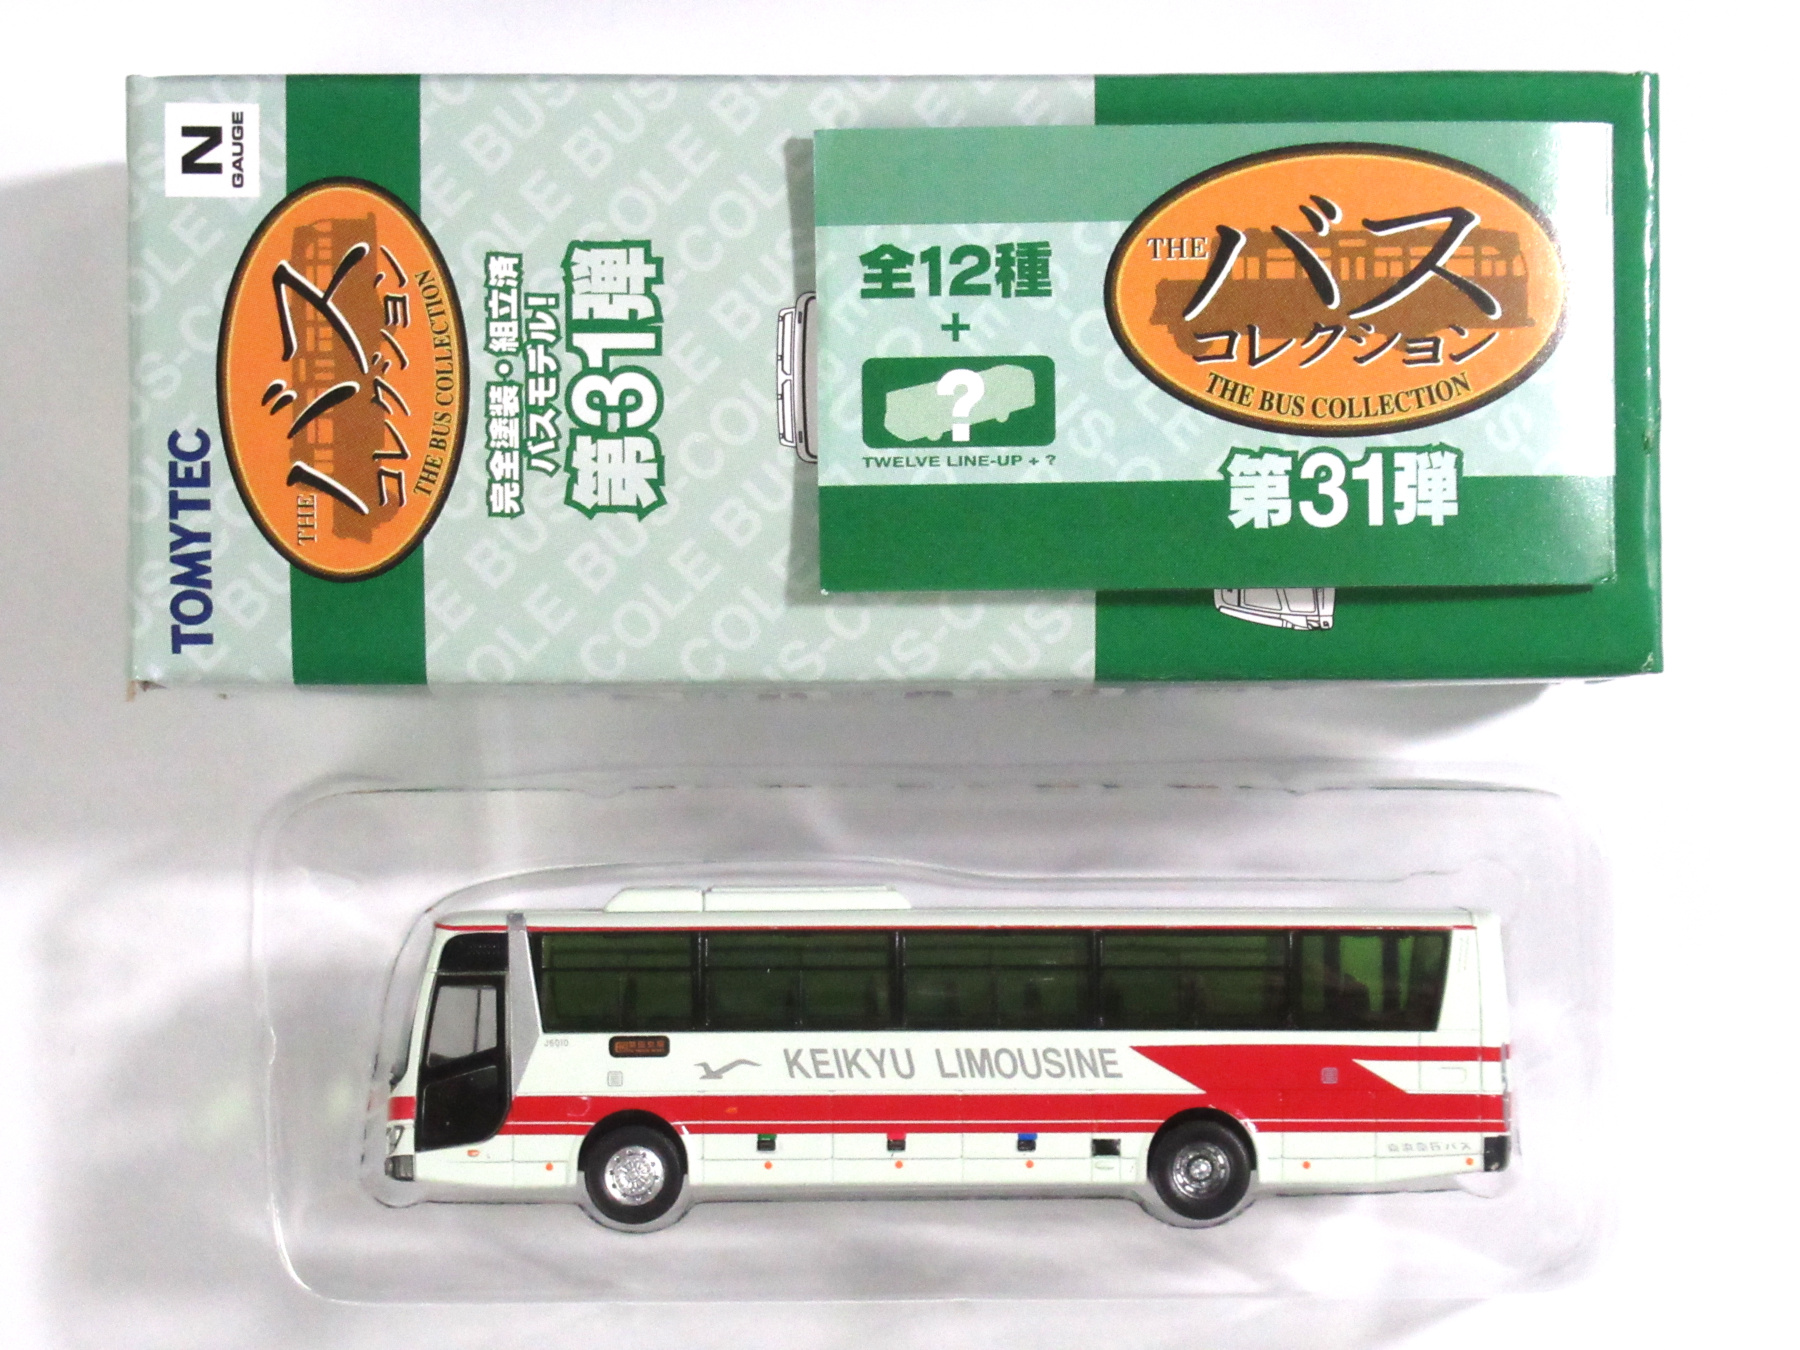 426 バスコレ31弾 京浜急行バス